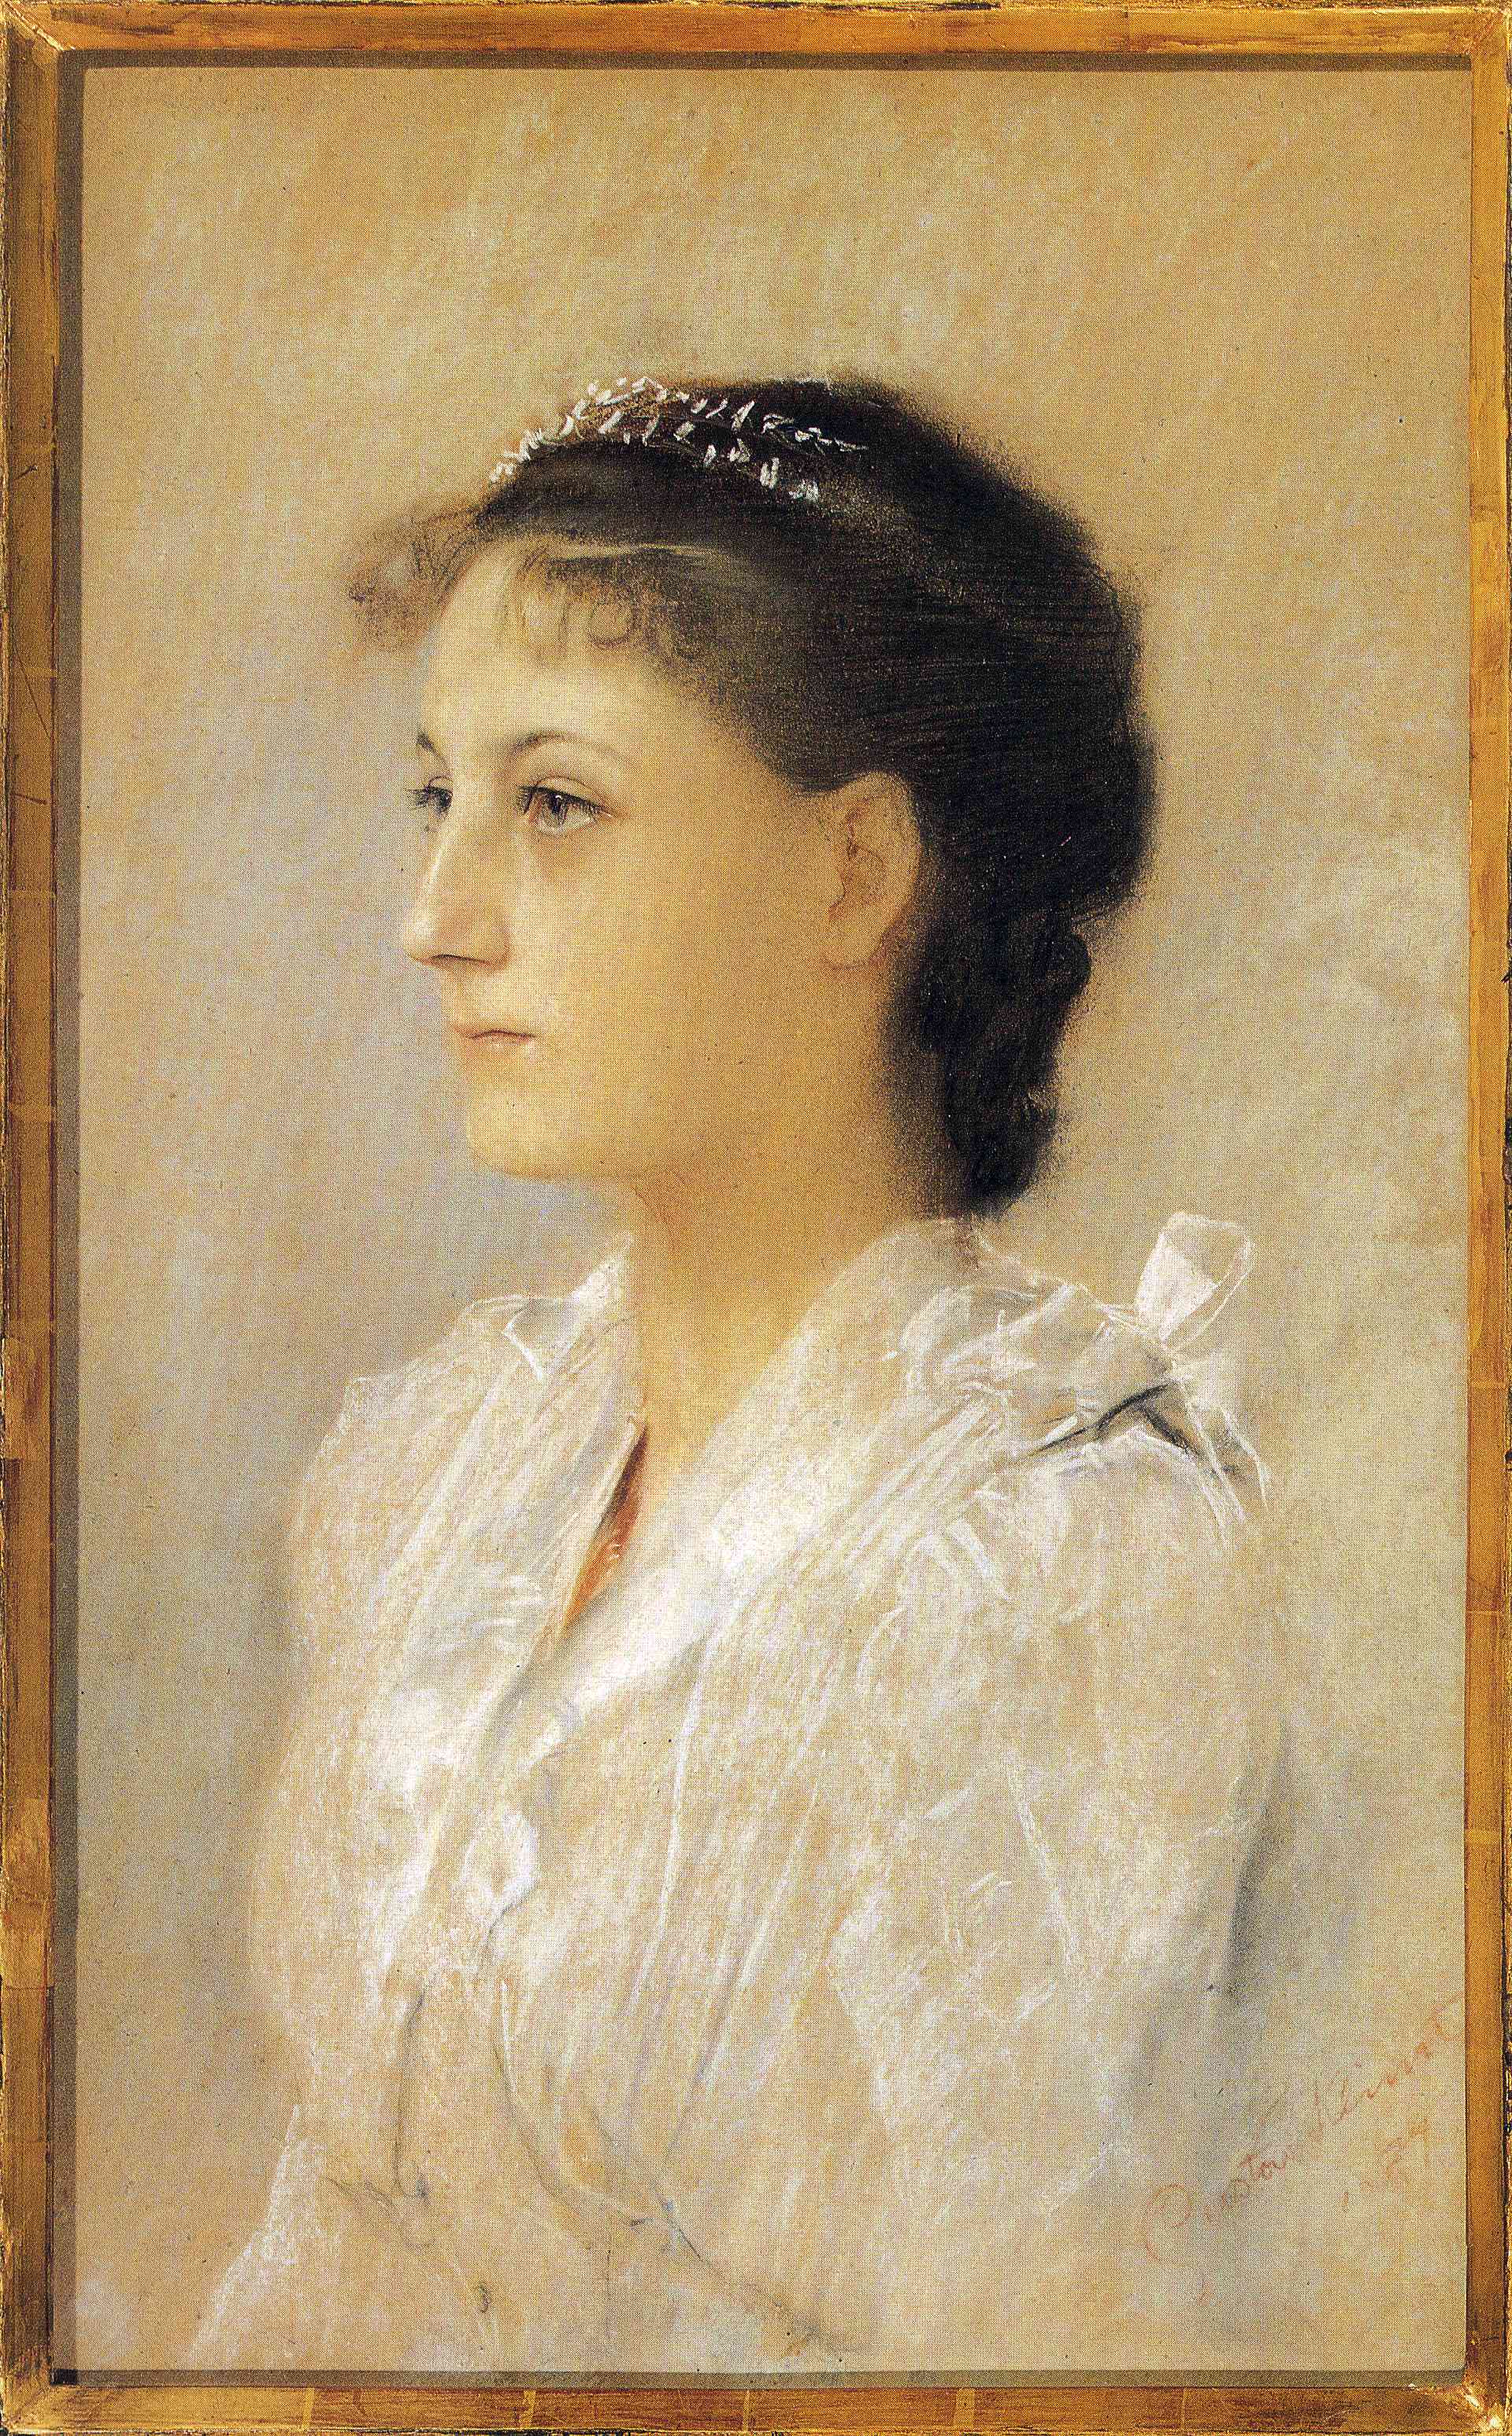 Emilie Flöge, Aged 17 (1891).